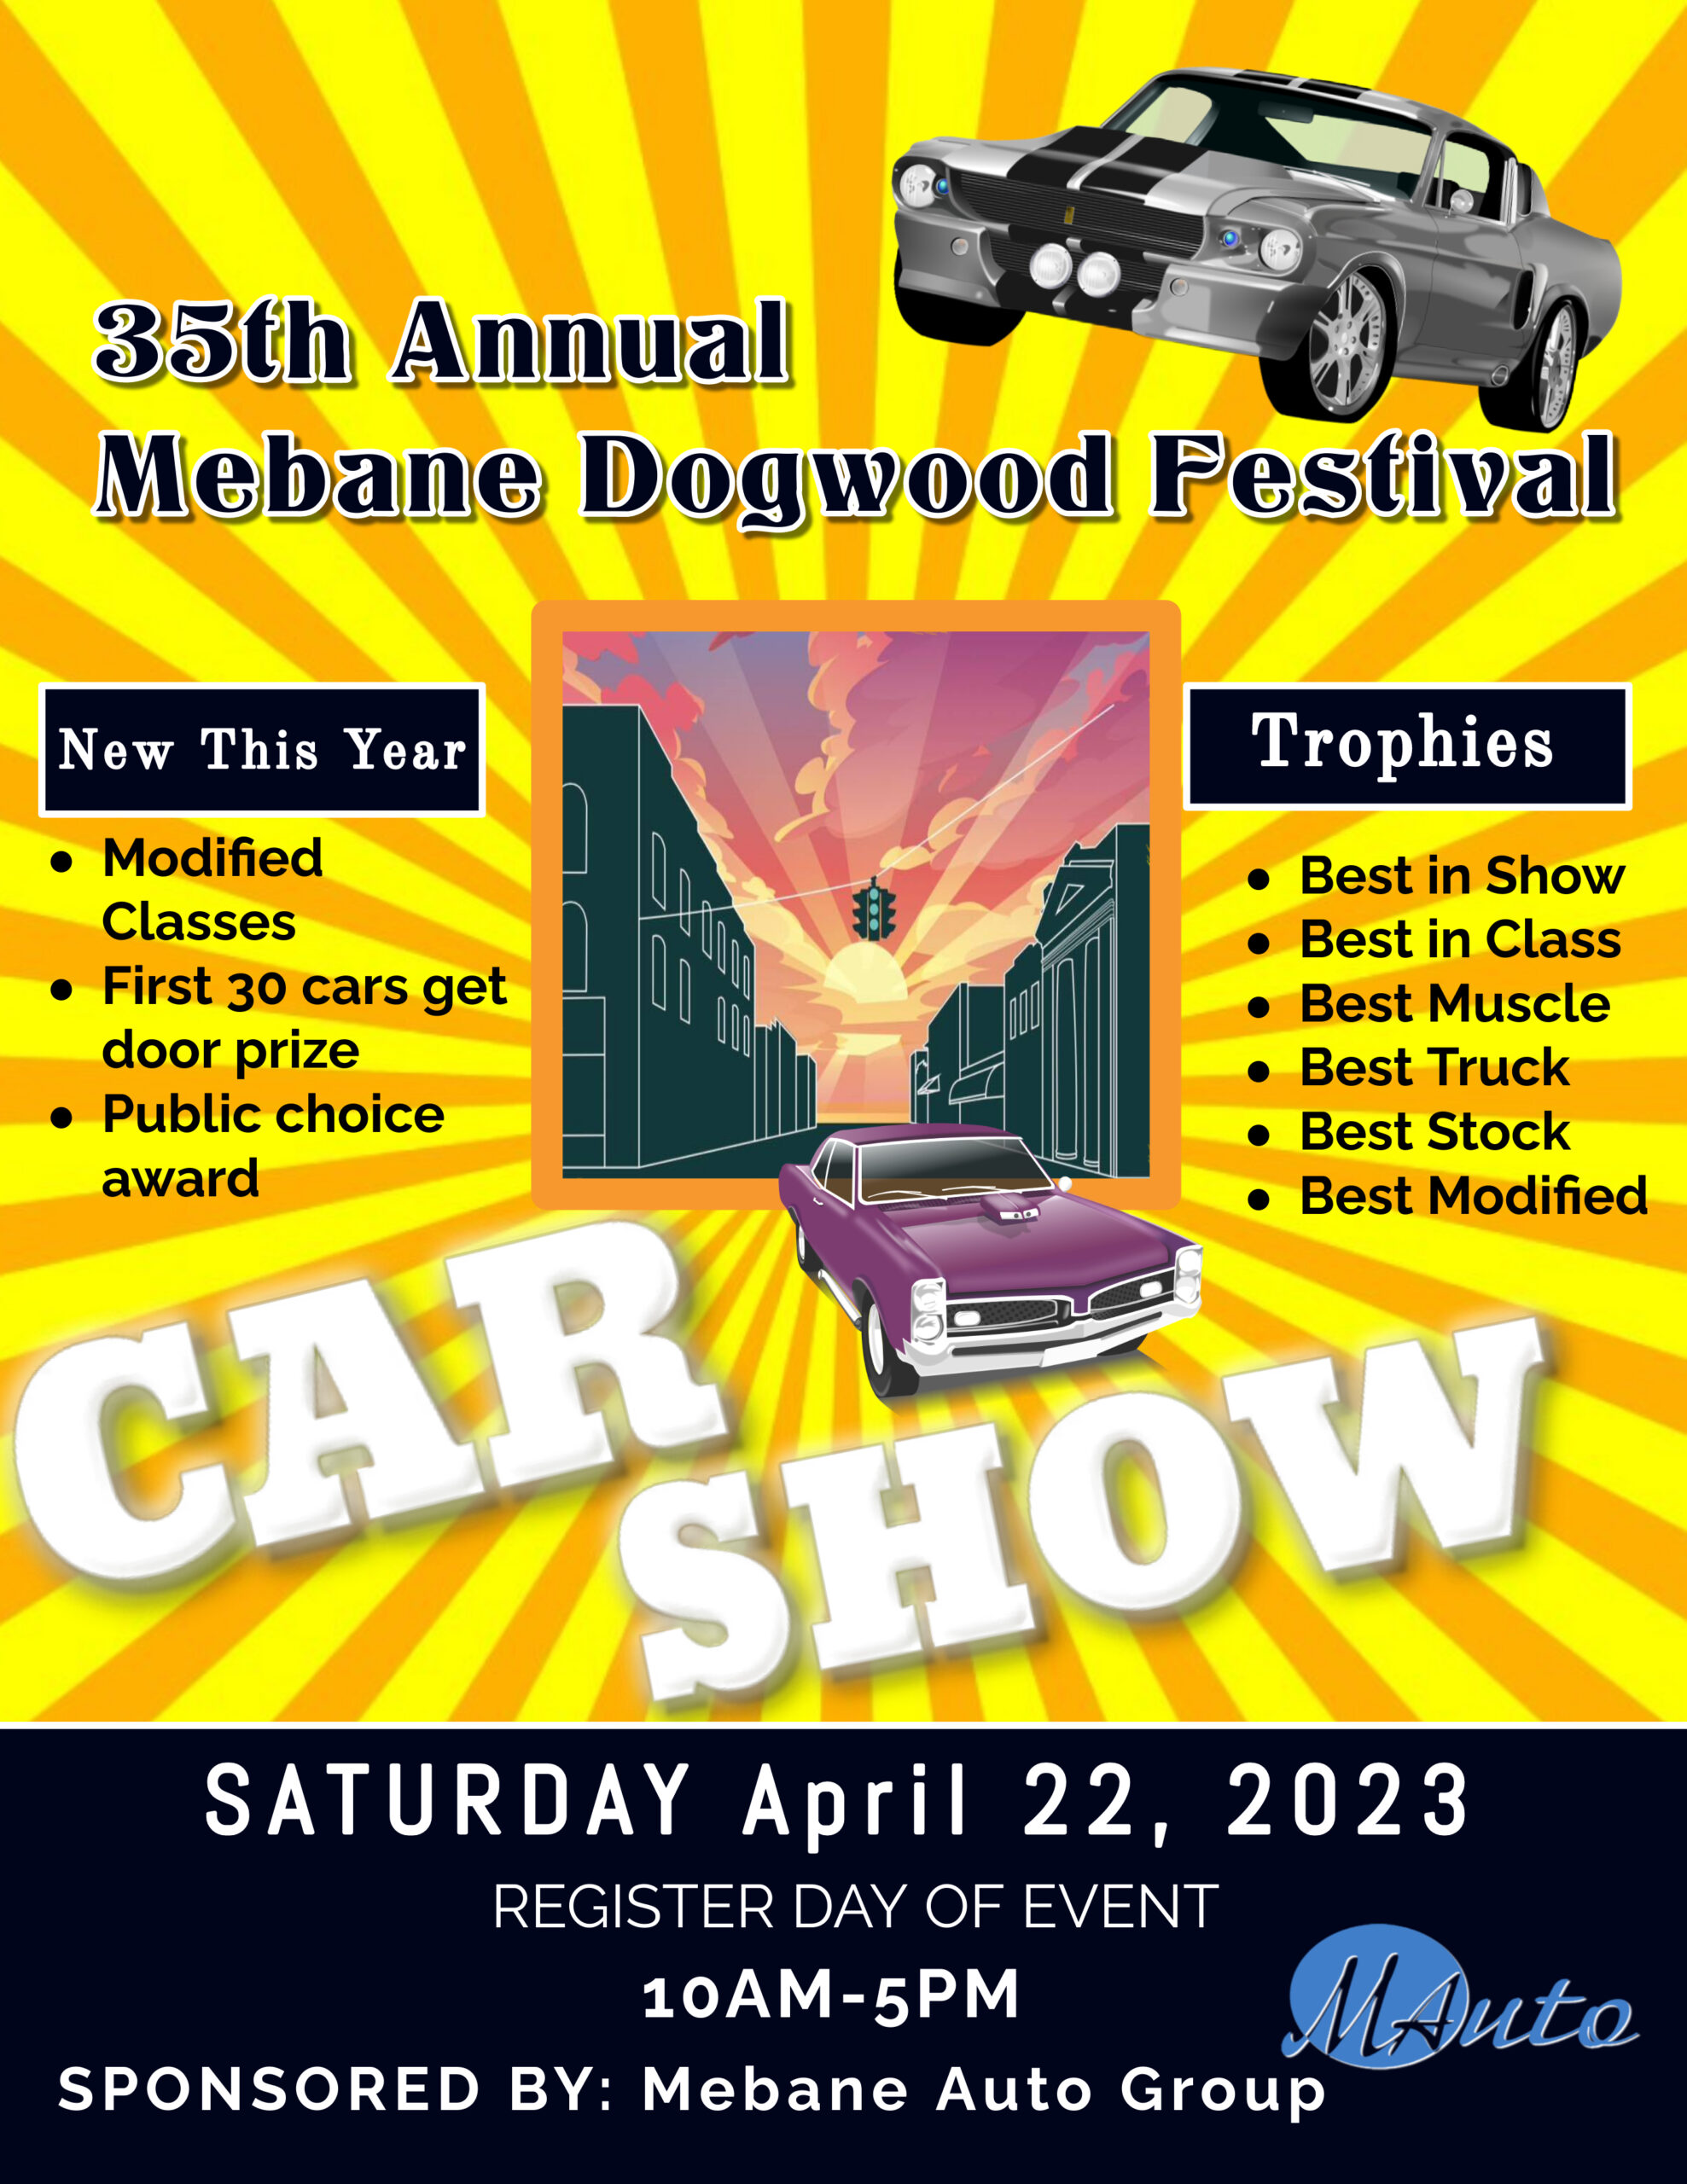 Mebane Dogwood Festival Car Show Saturday, Apr 22, 2023 1000am